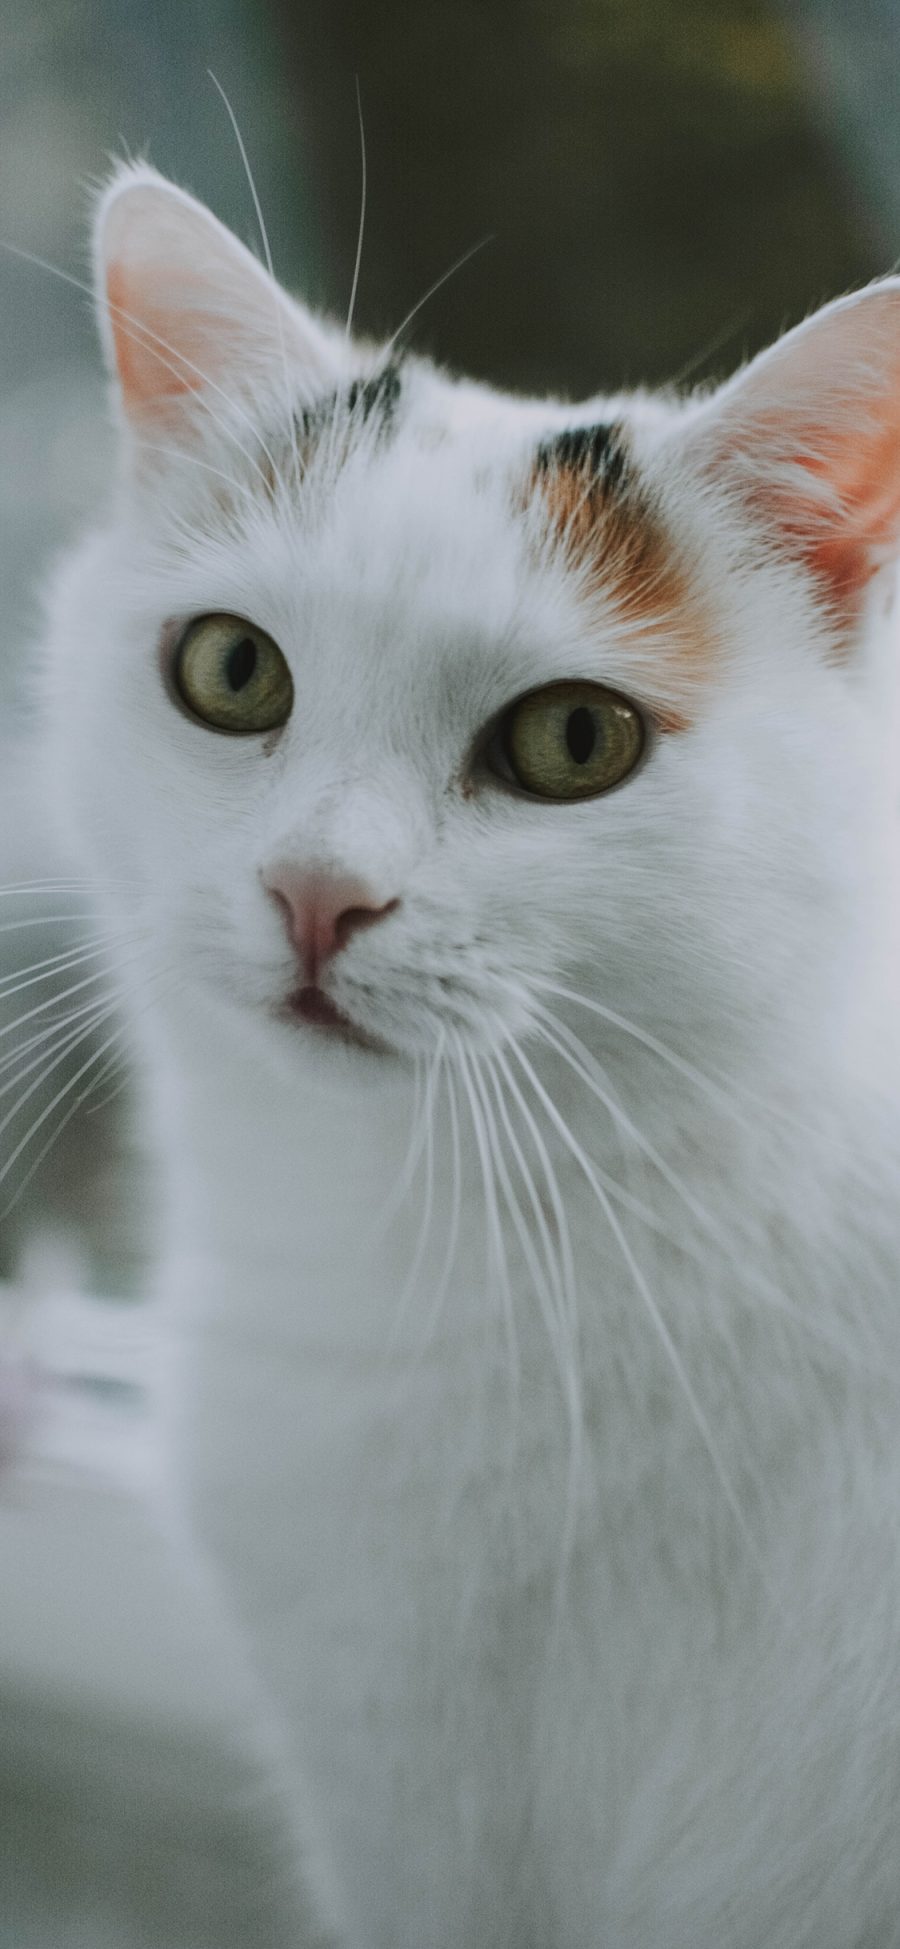 [2436×1125]猫咪 白猫 宠物 可爱 苹果手机壁纸图片